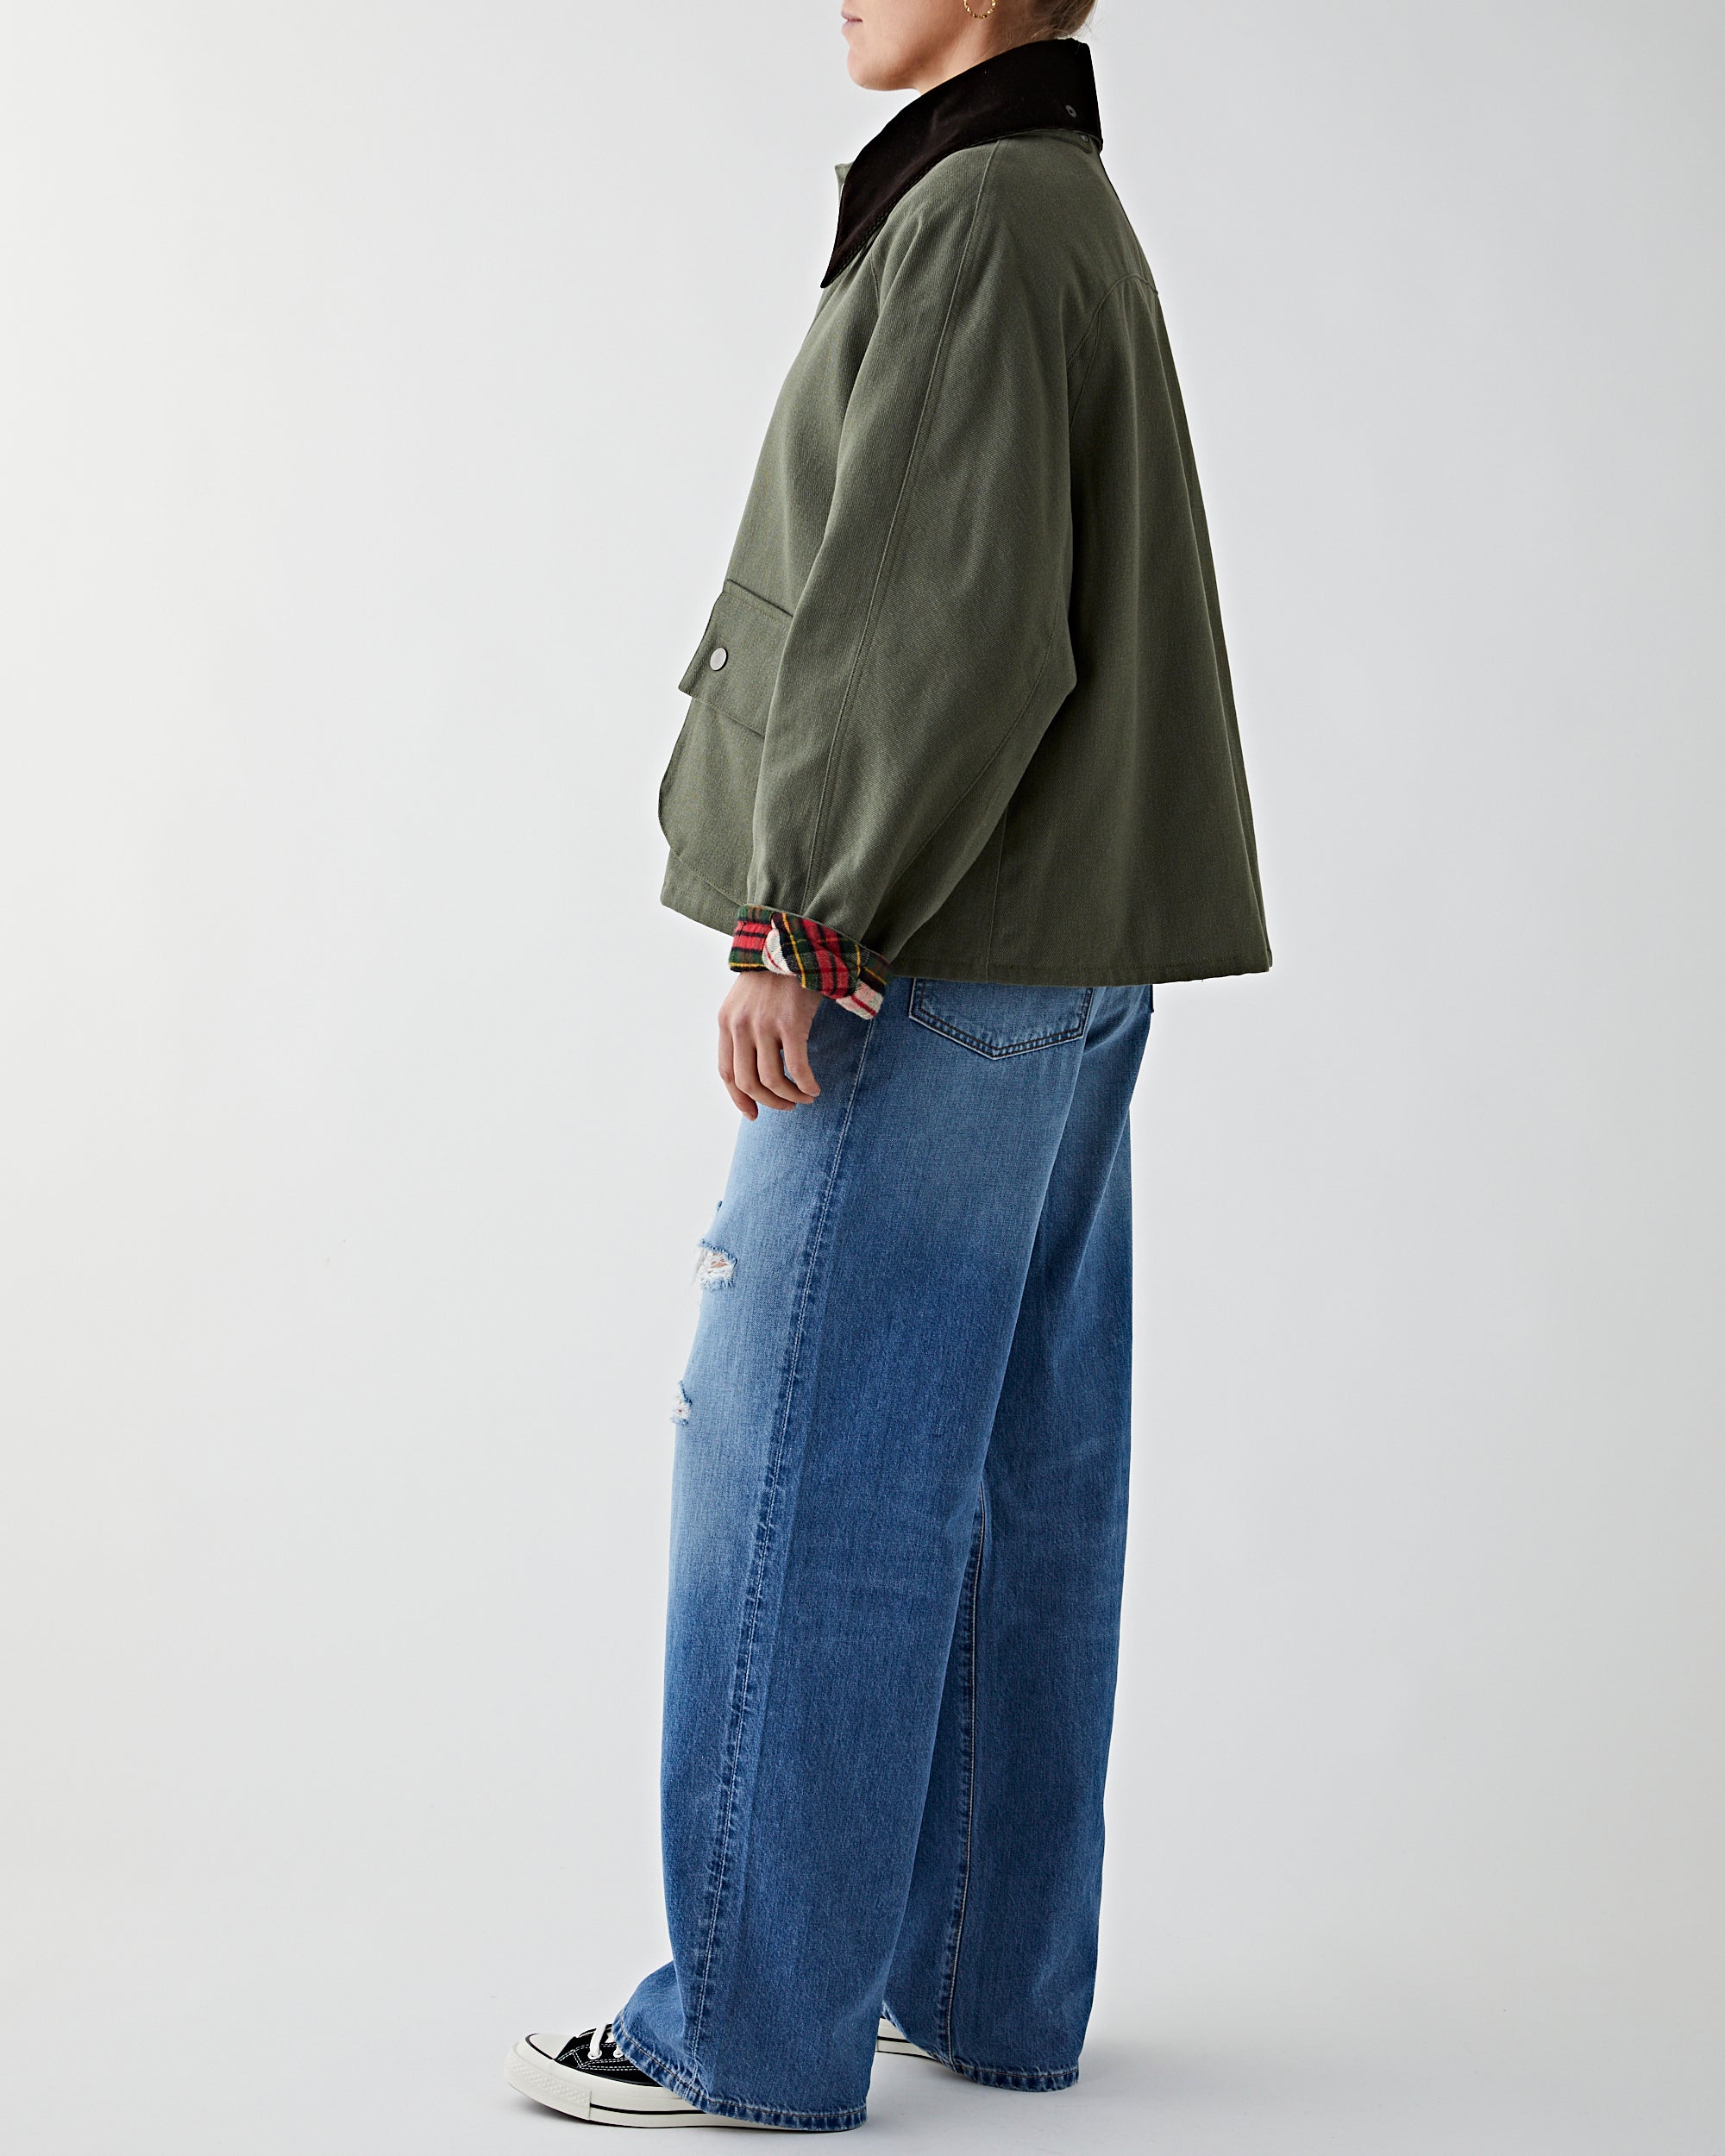 Denimist Oversized Field Jacket Olive JKT Short Women